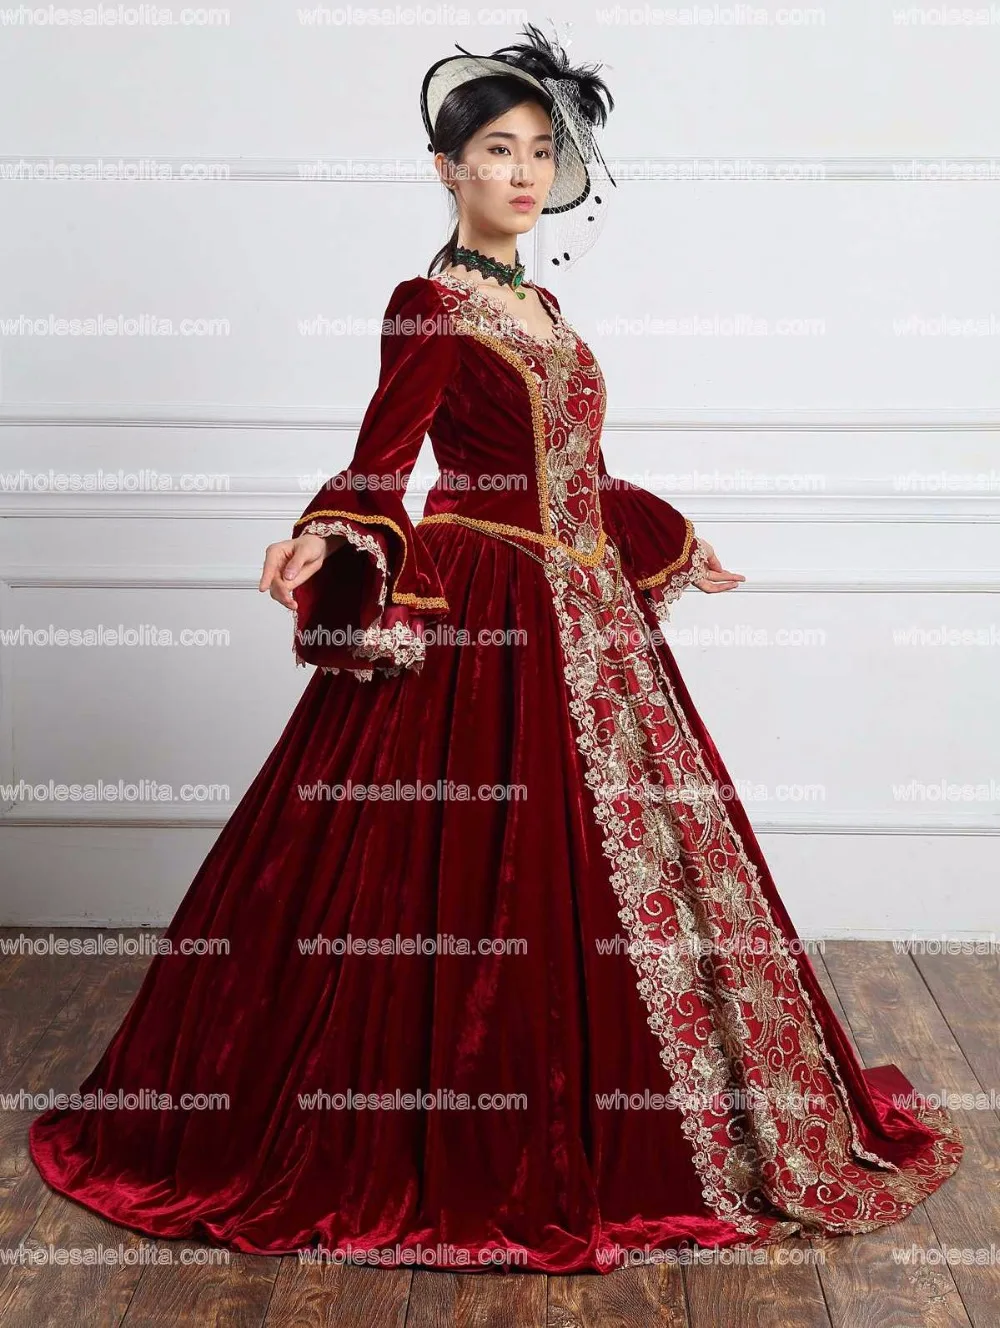 Высокое качество Бургундия бархат барокко Marie платье Антуанетты Ренессанс Готический период костюмы